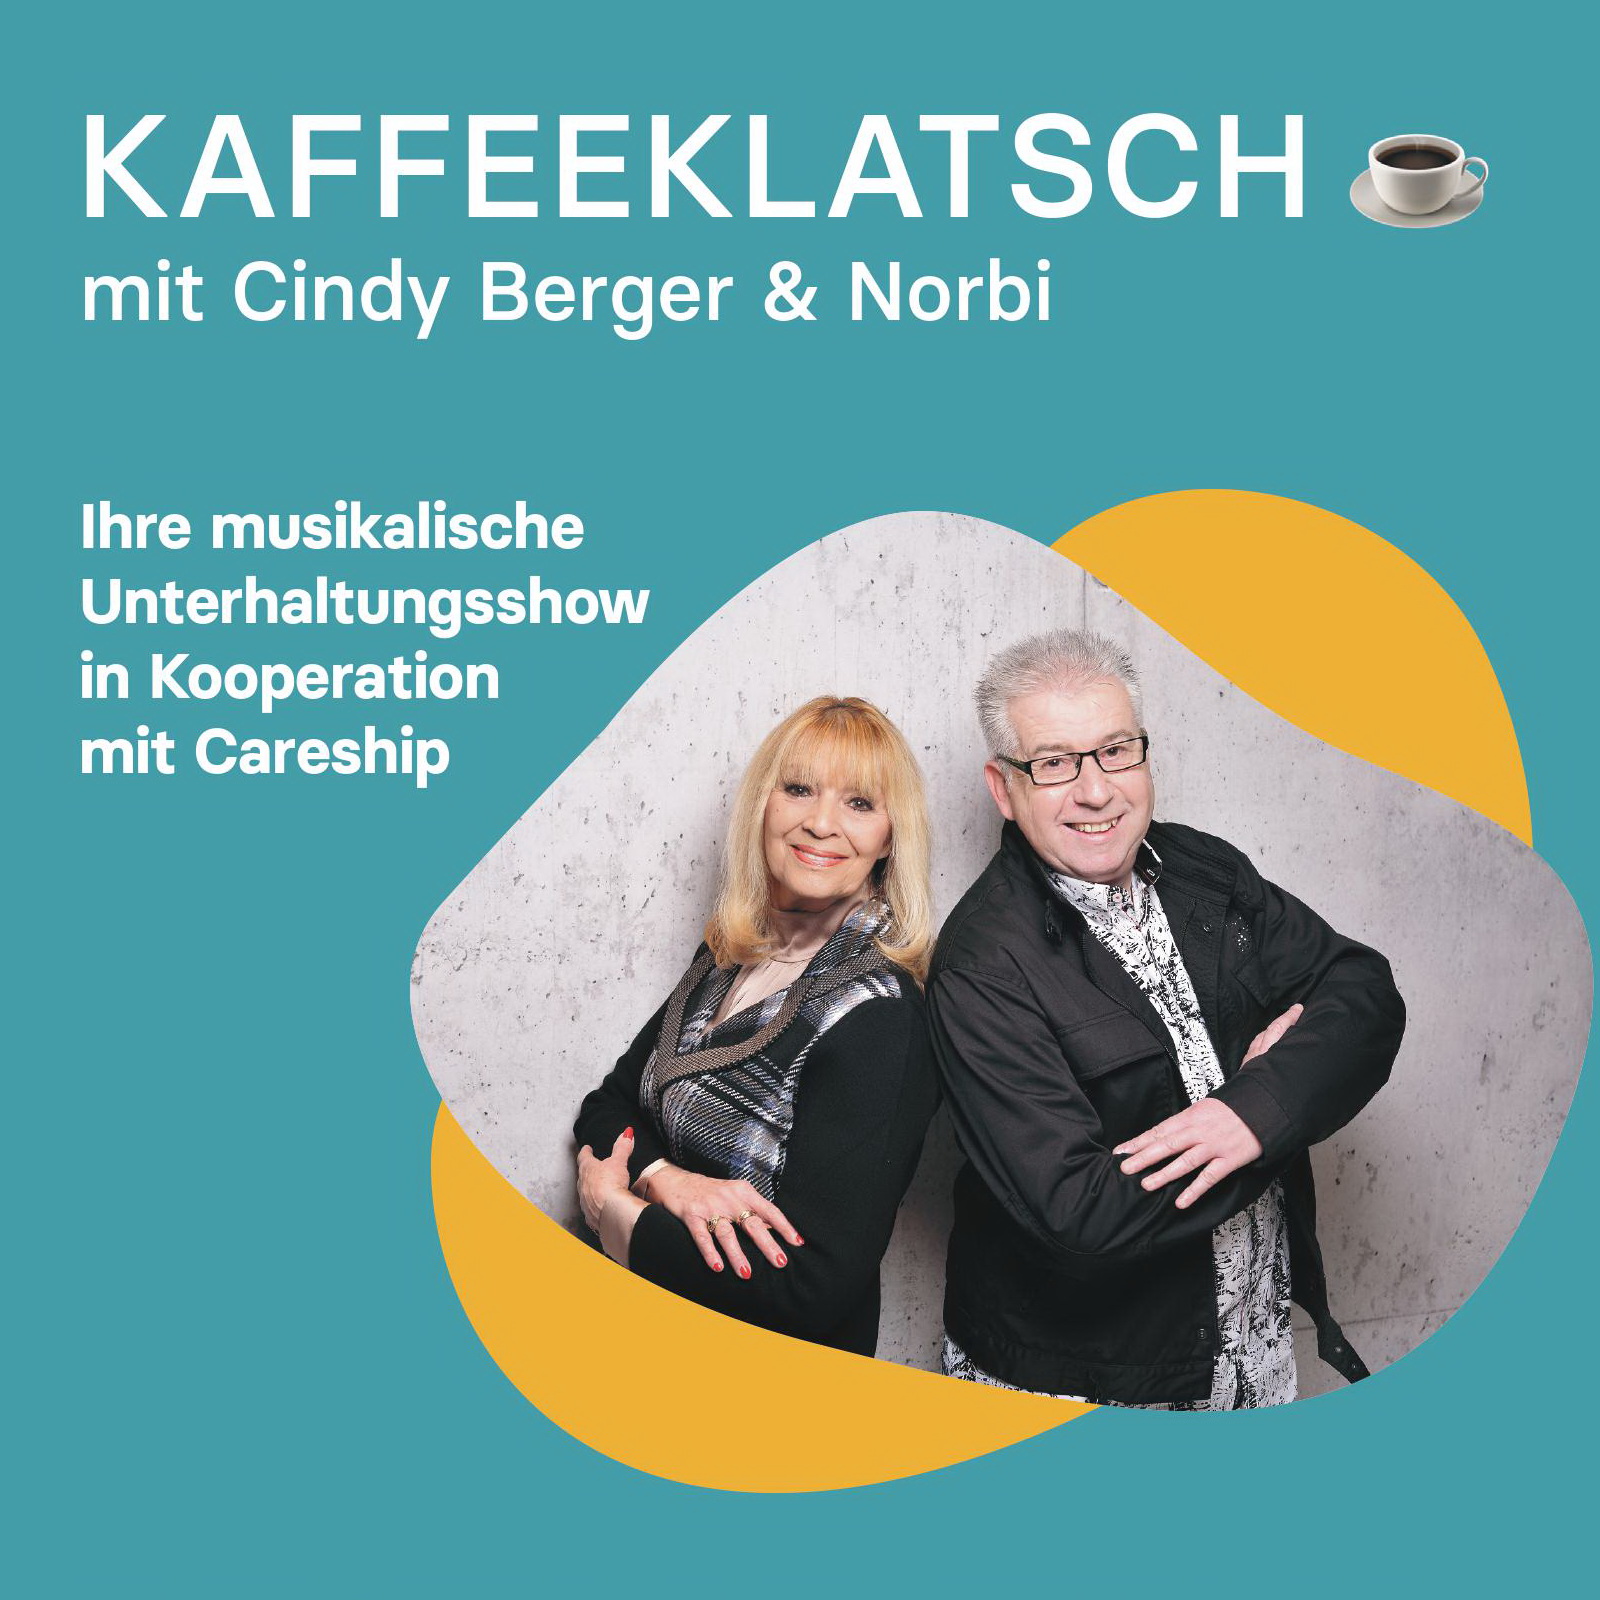 Der Kaffeeklatsch mit Cindy Berger & Norbi